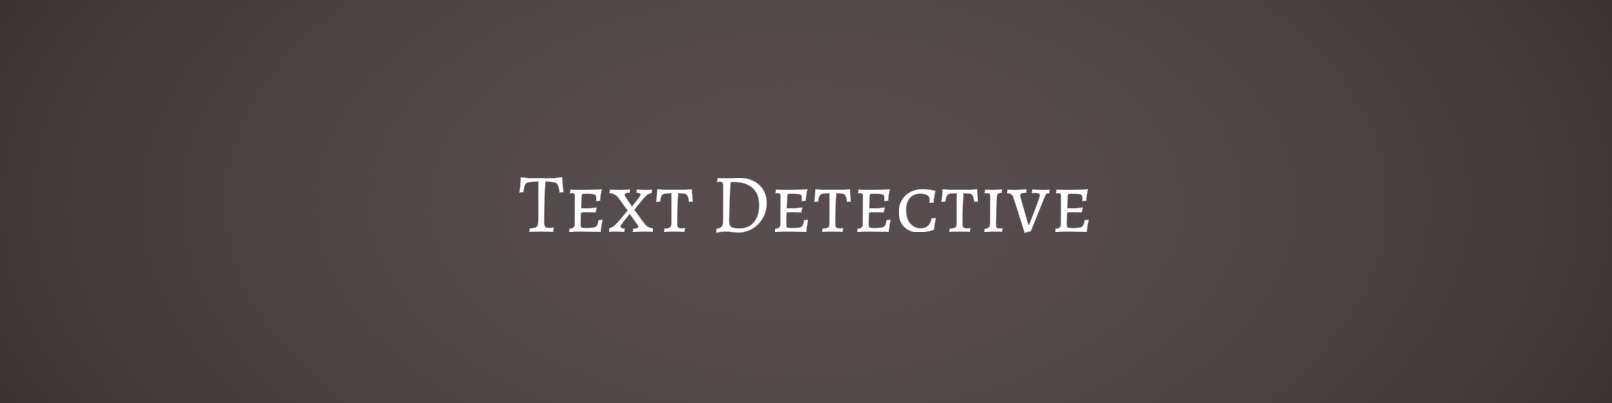 Text Detective